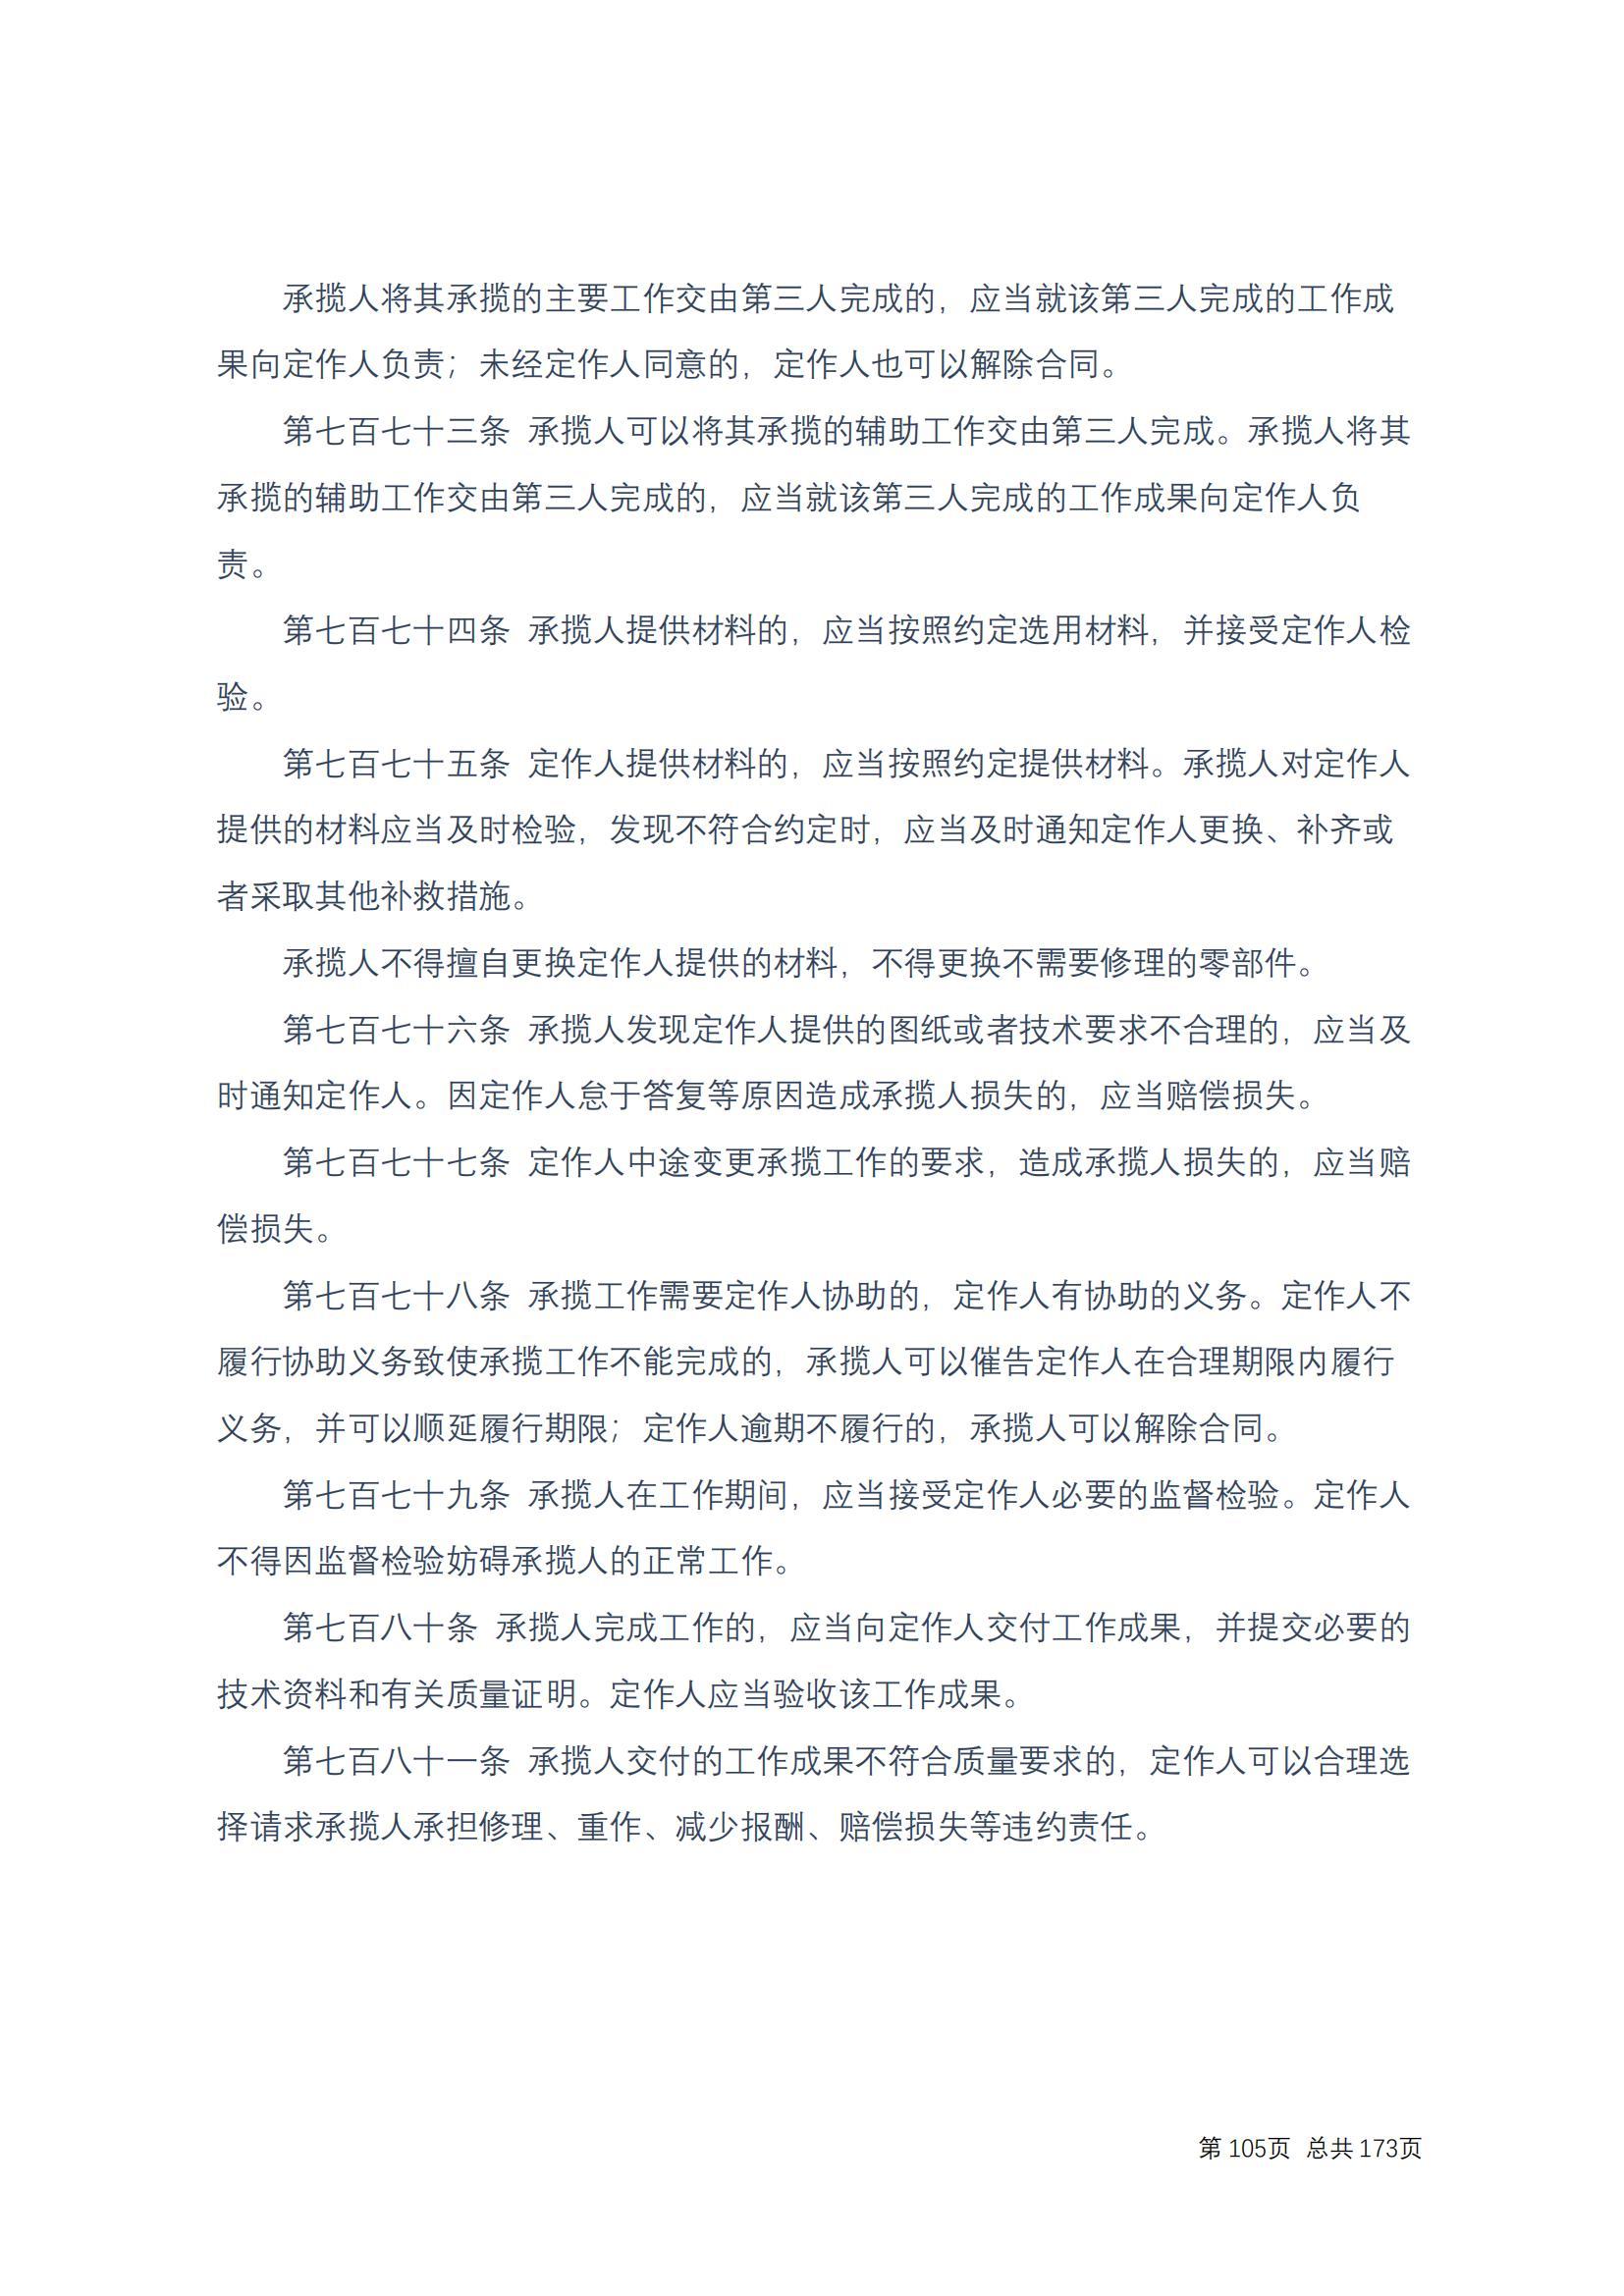 中华人民共和国民法典 修改过_104